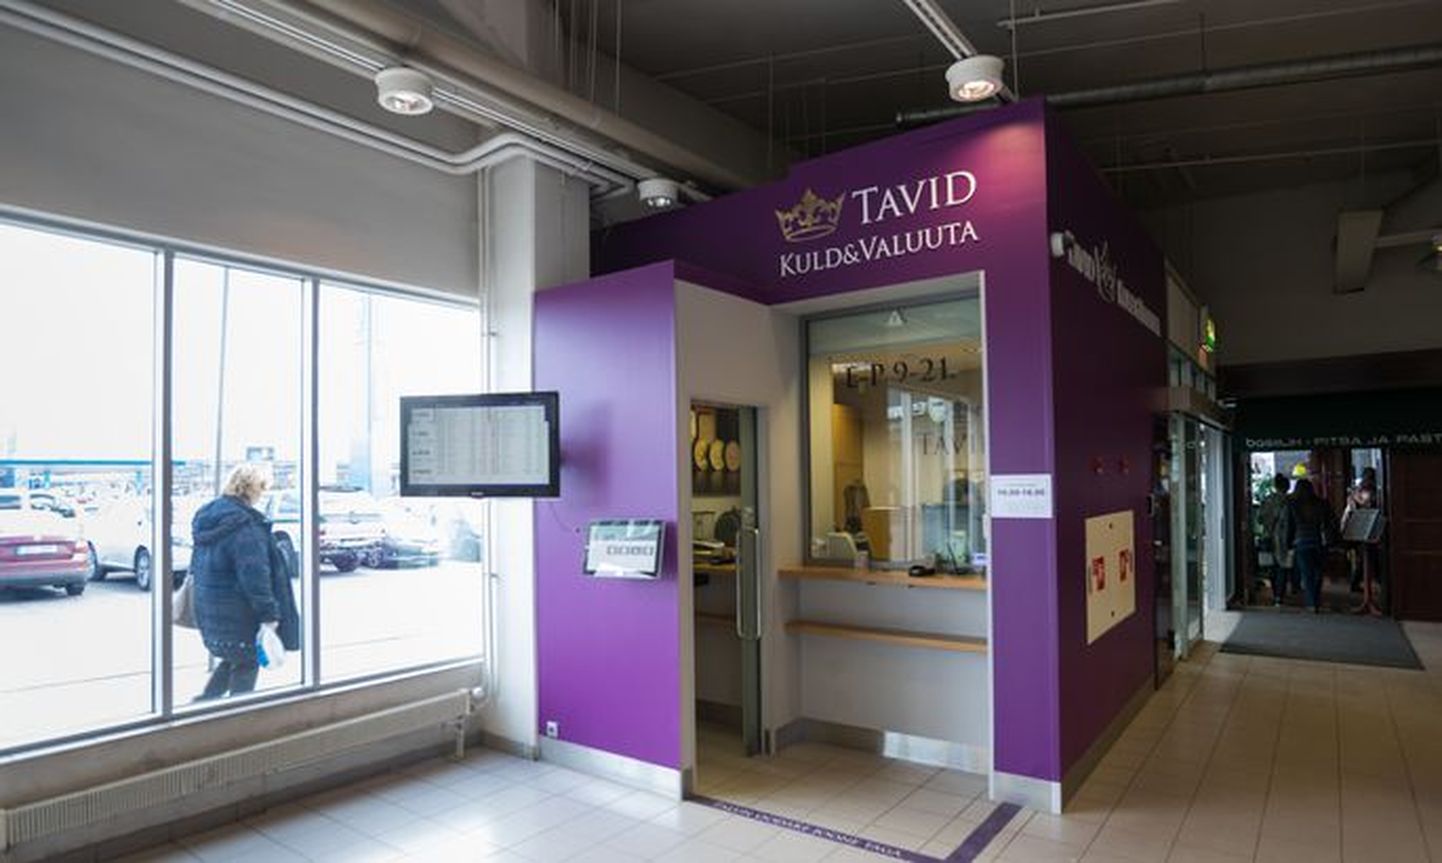 Пункт обмена валют Tavid и ювелирный магазин в тороговом центре Sikupilli в Таллинне.